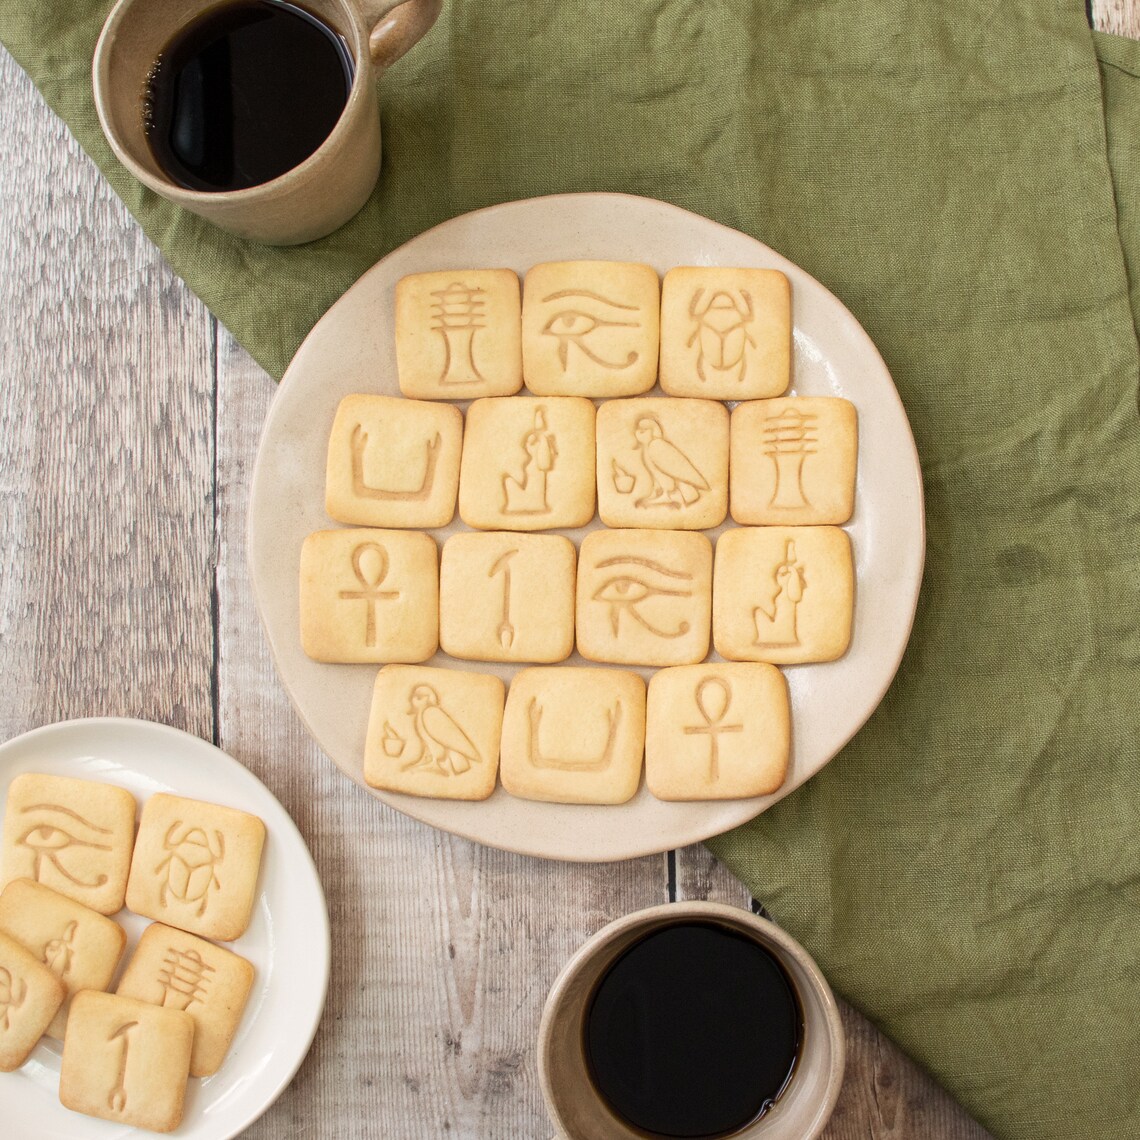 埃及象形文字花样家用做蔓越莓翻糖工具卡通压模曲奇烘焙饼干模具